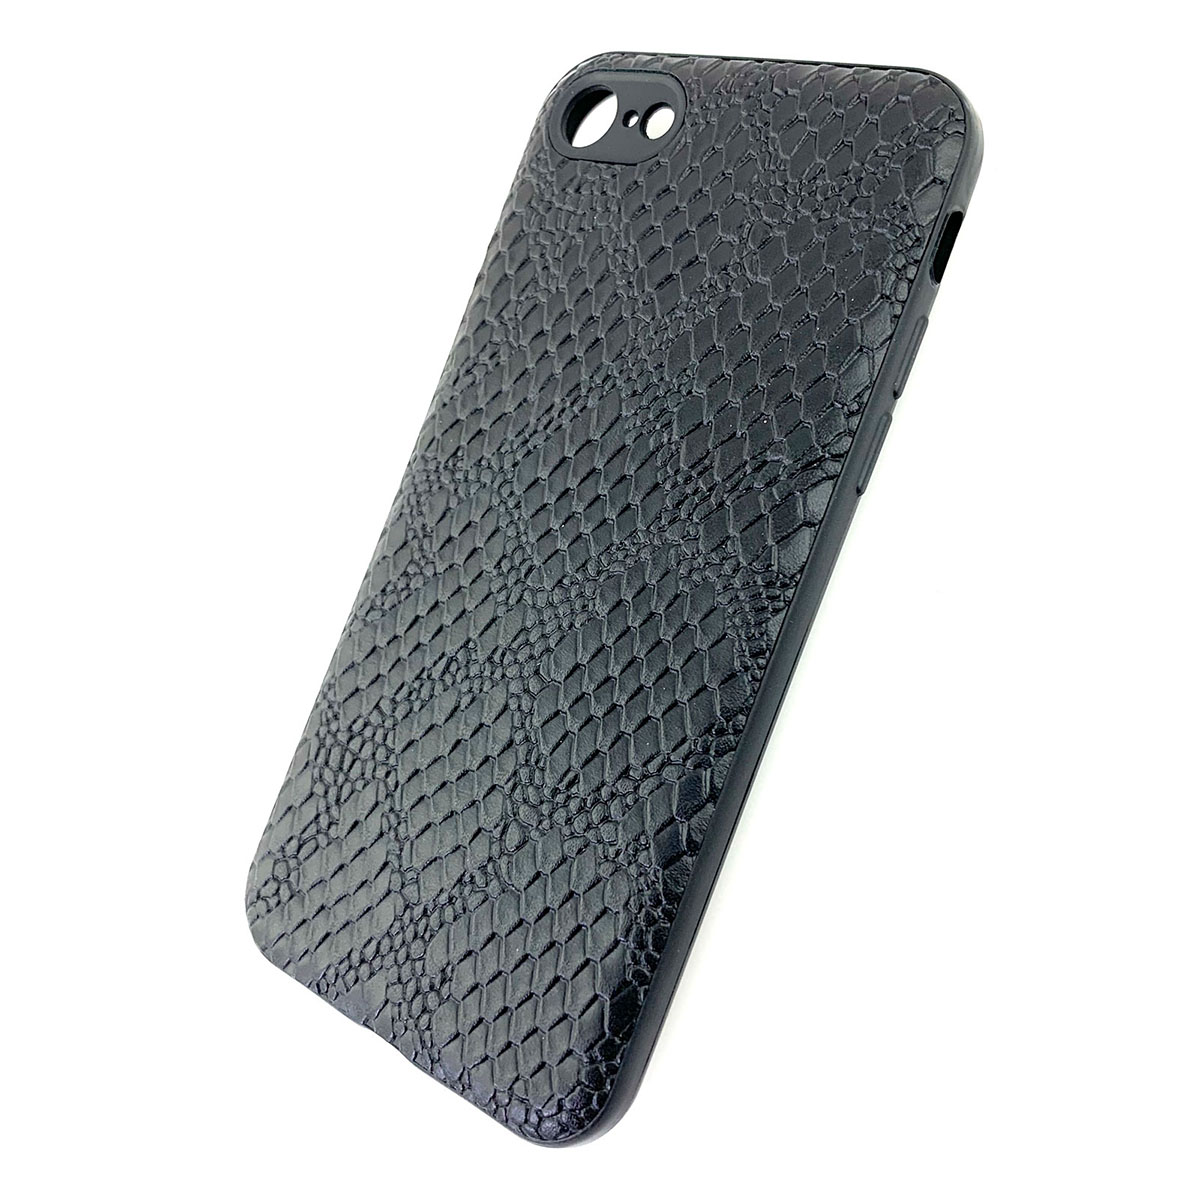 Чехол накладка для APPLE iPhone 7, 8, силикон, под кожу питона, цвет черный.